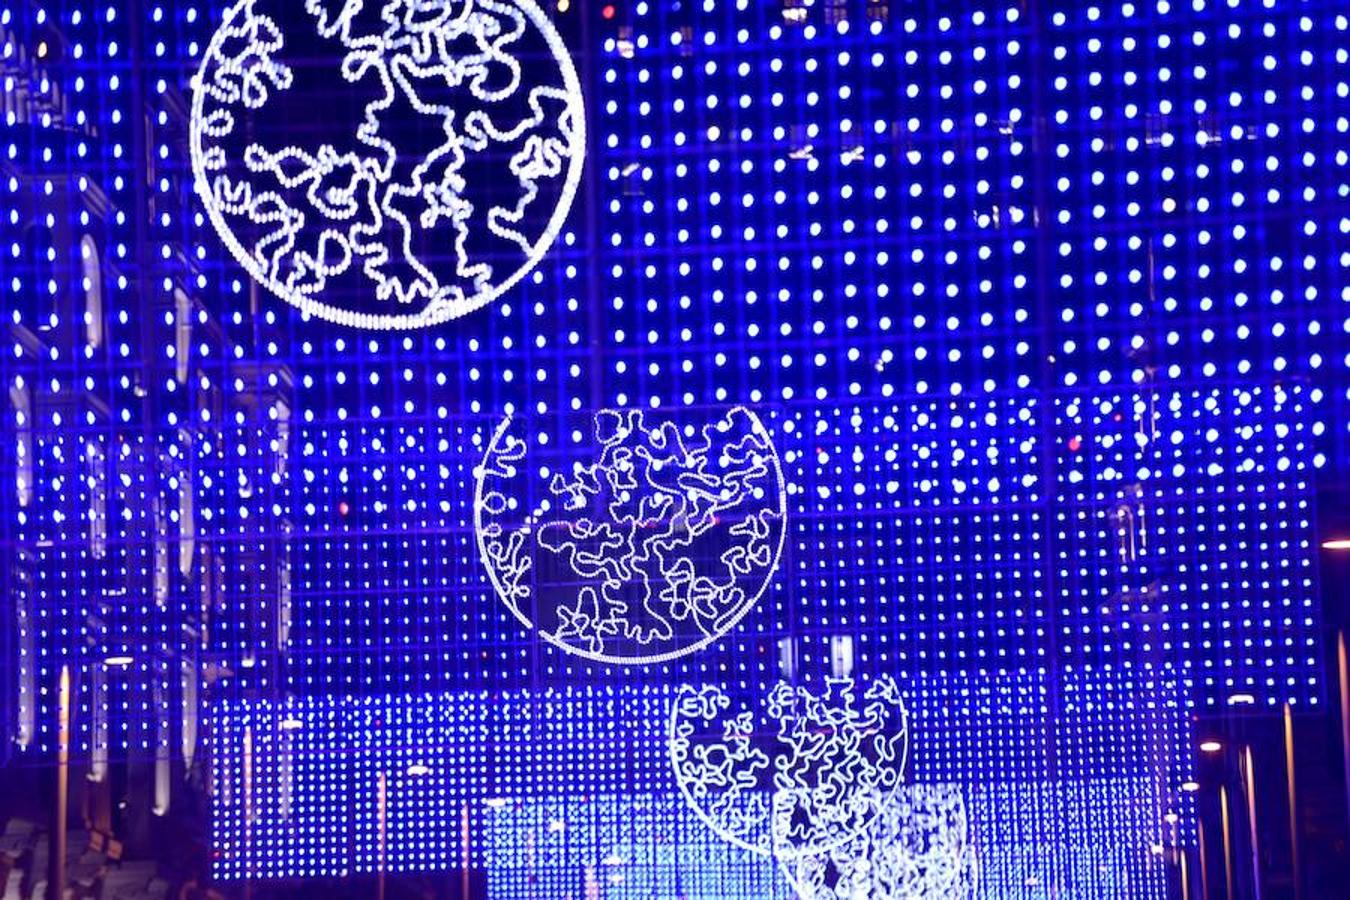 Alumbrado luces de Navidad en el centro de Madrid.